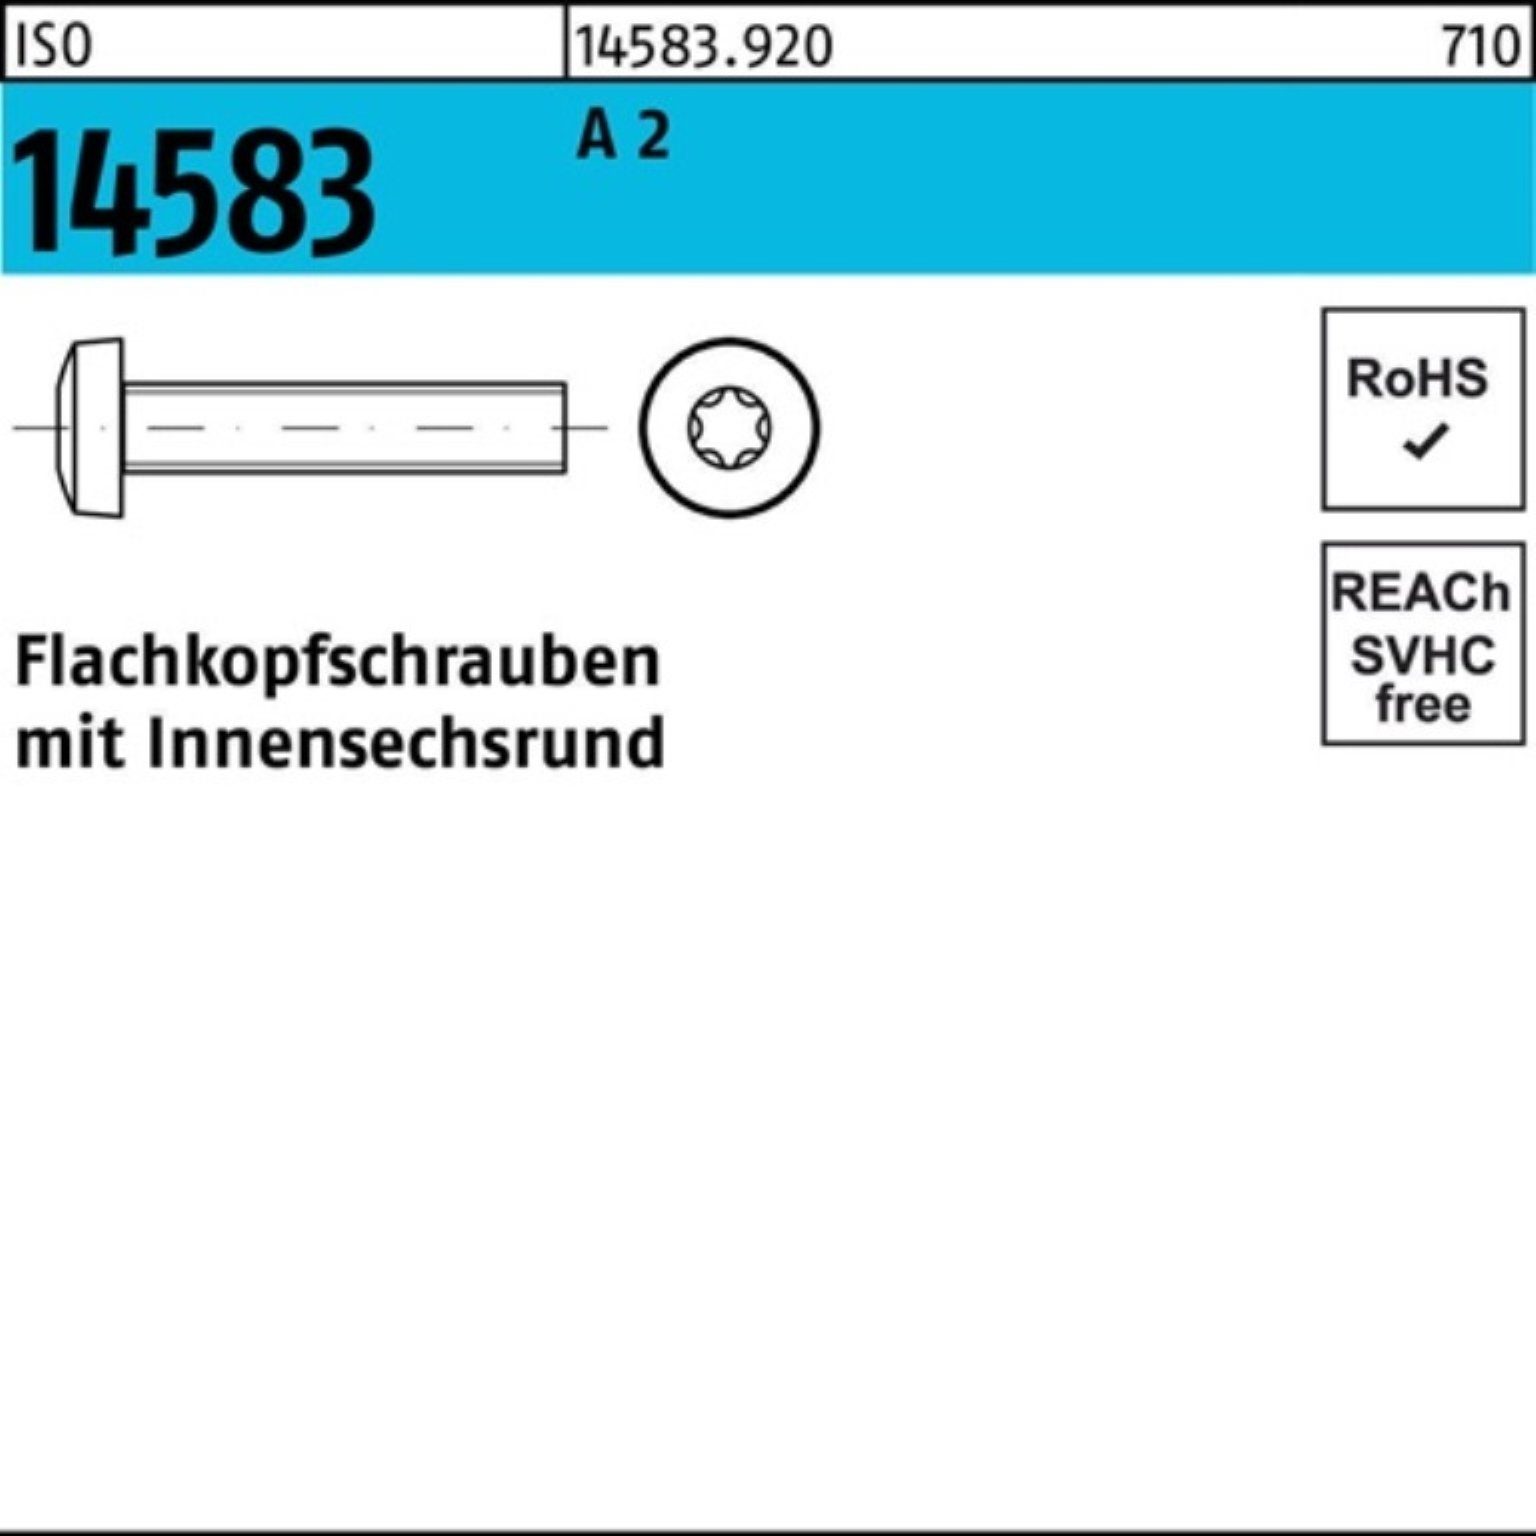 Reyher Schraube 200er Pack A 2 ISR Flachkopfschraube M10x 14583 Stück 16 ISO ISO 200